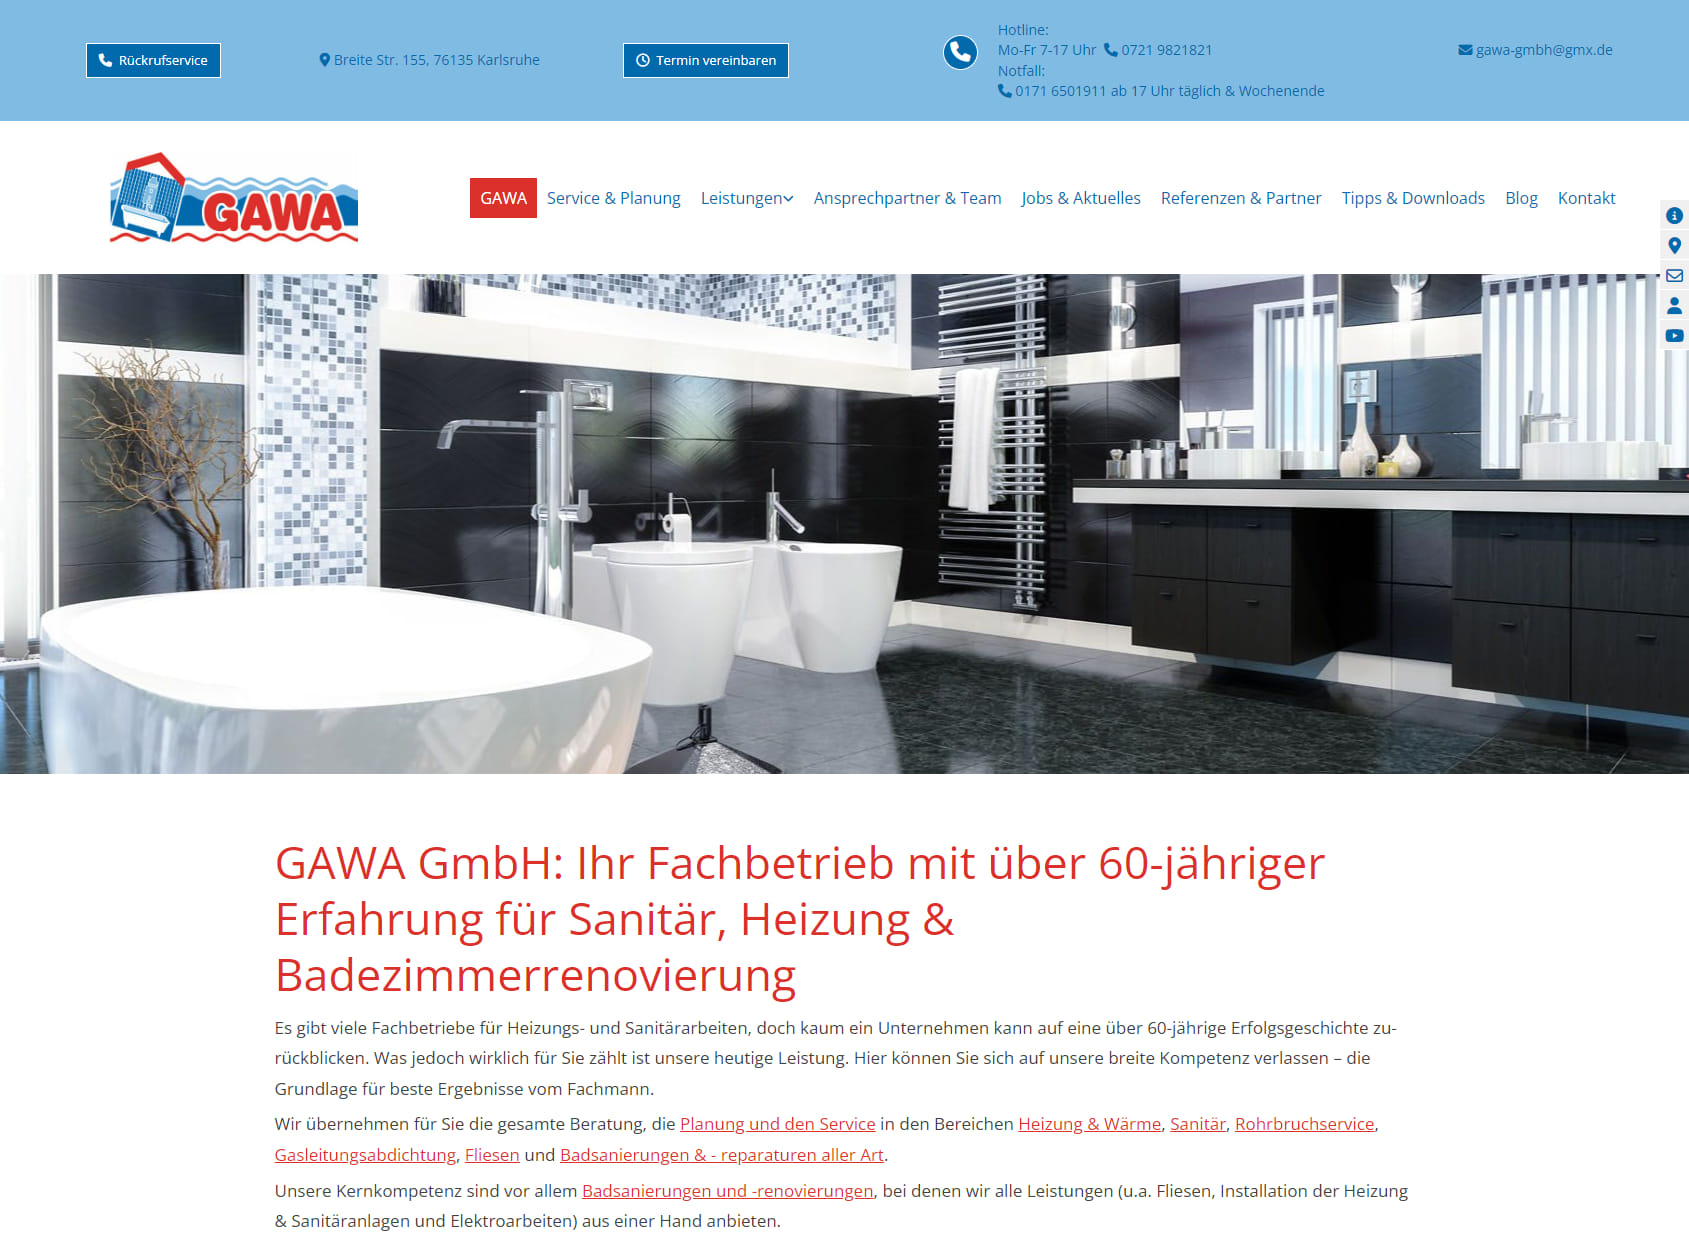 GAWA GmbH